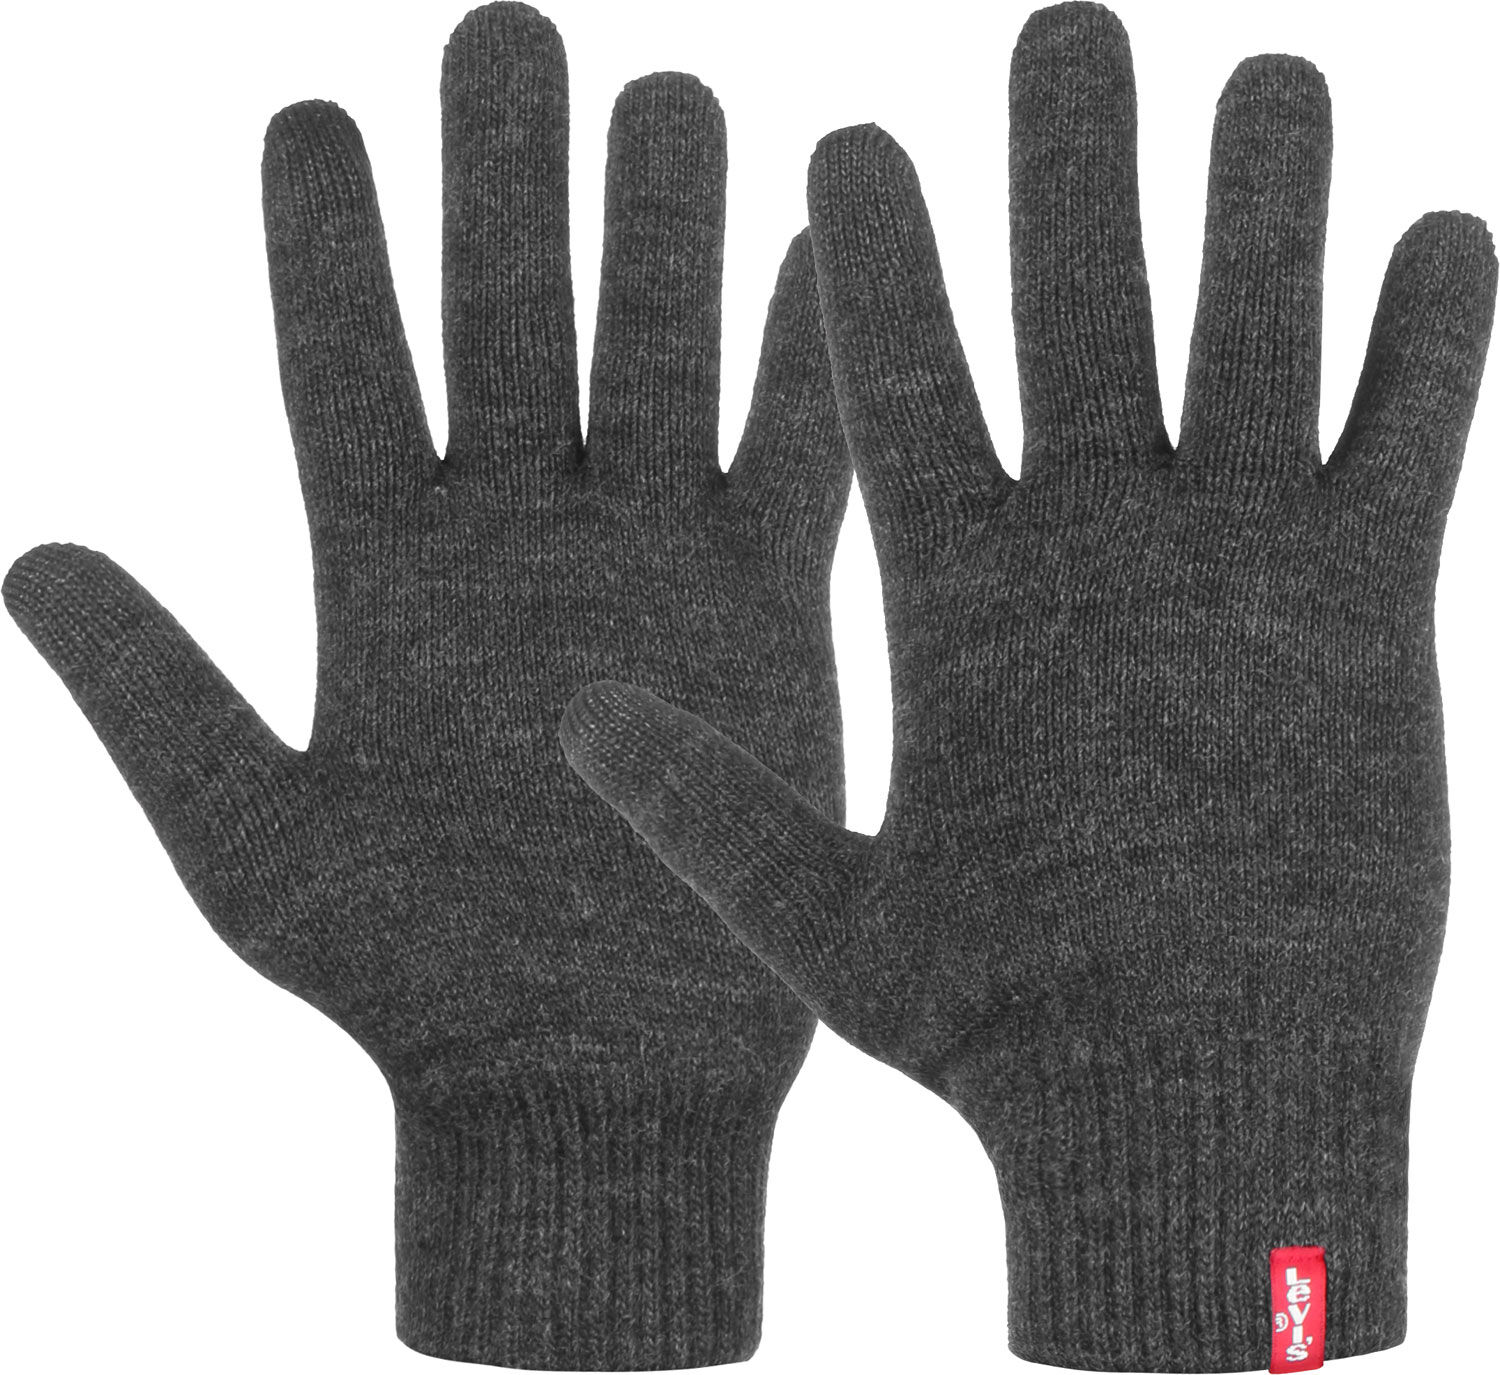 I migliori guanti touchscreen per avere le mani calde e usare lo smartphone